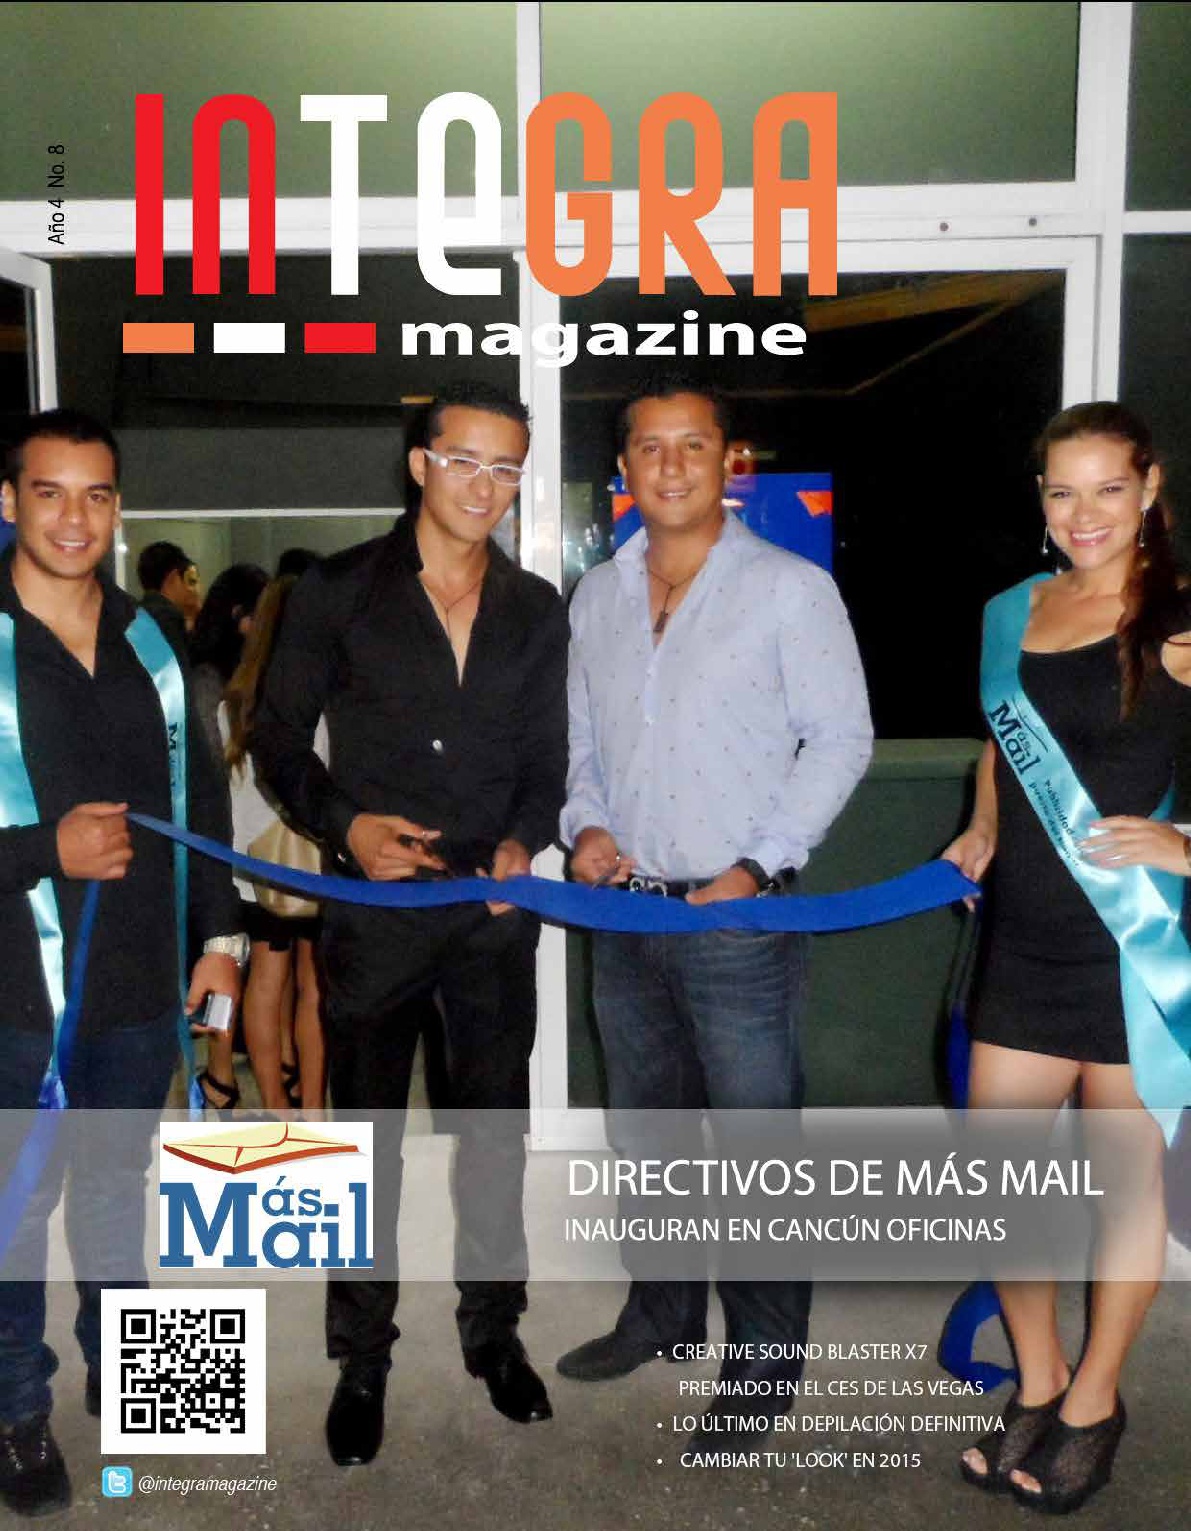 Directivos de Más Mail inauguran en Cancún oficinas